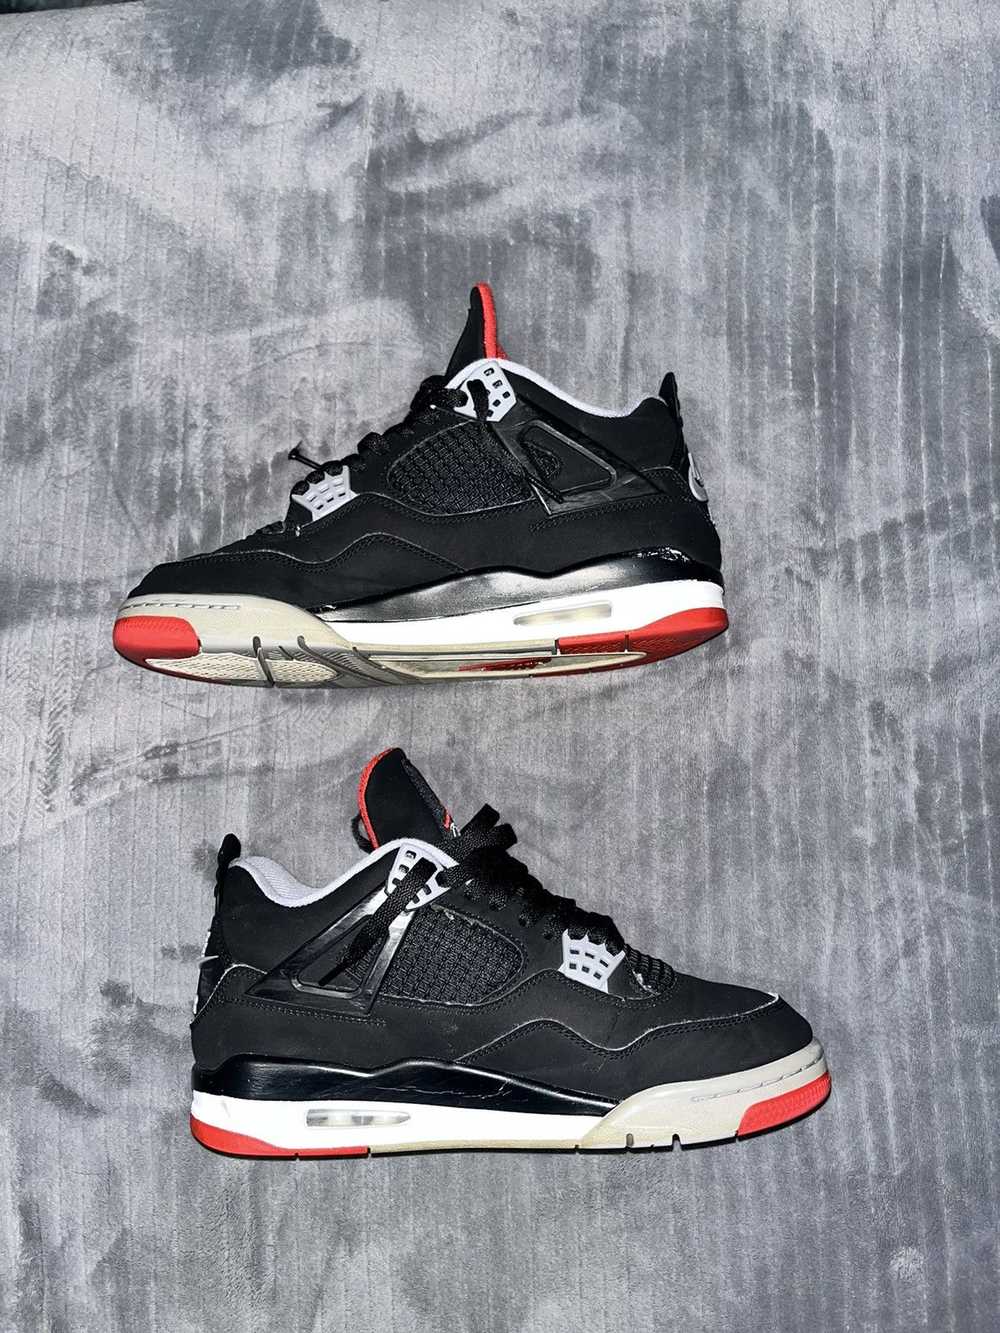 Jordan Brand × Nike Air Jordan retro 4 bred - image 4